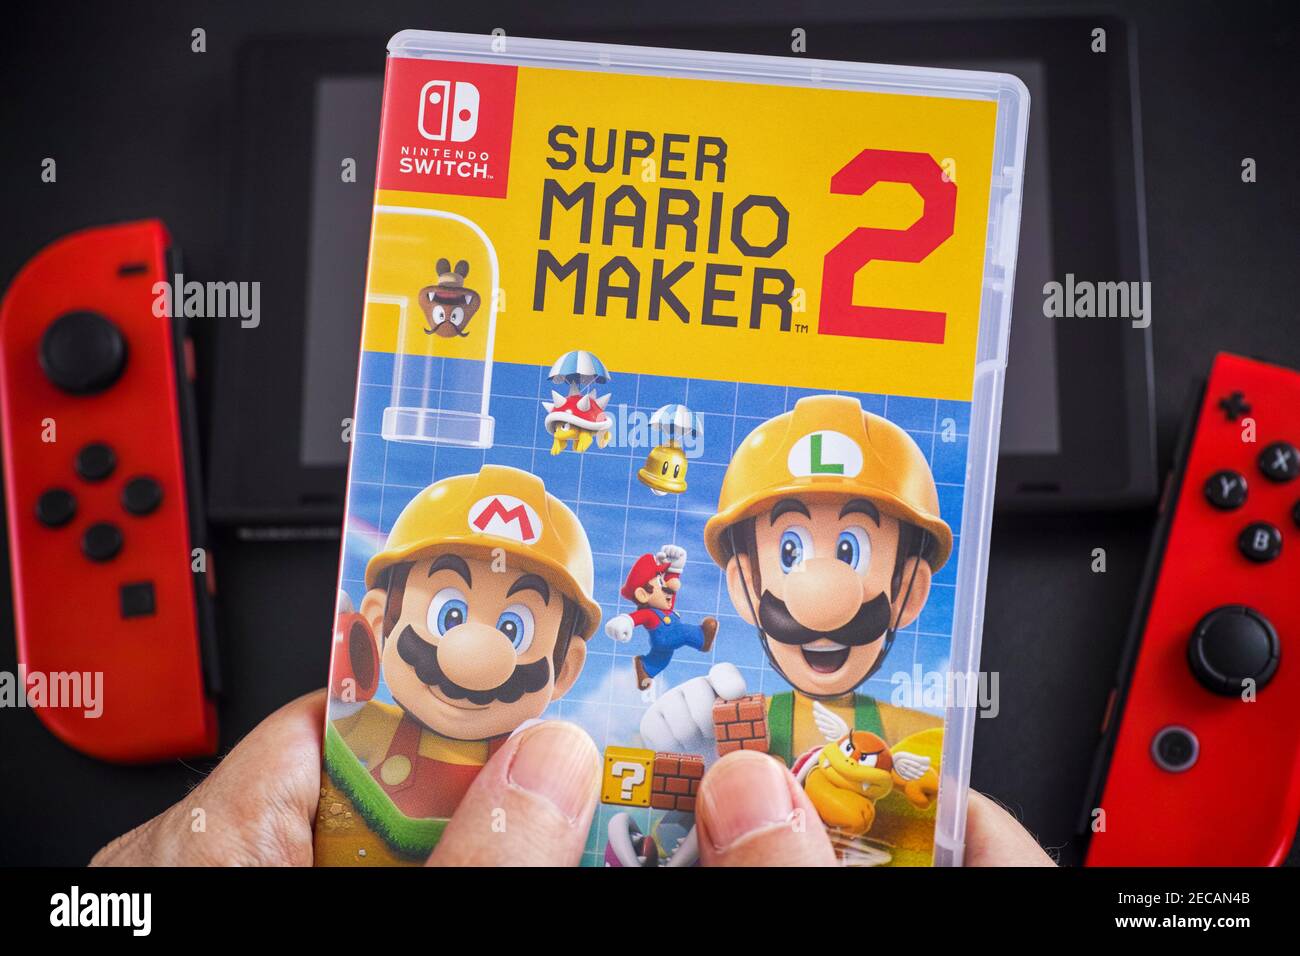 Tambow, Russische Föderation - 24. Januar 2021 EIN Mann hält ein Super Mario Maker 2 Videospiel in Kunststoffkoffer für die Nintendo Switch Konsole. Stockfoto